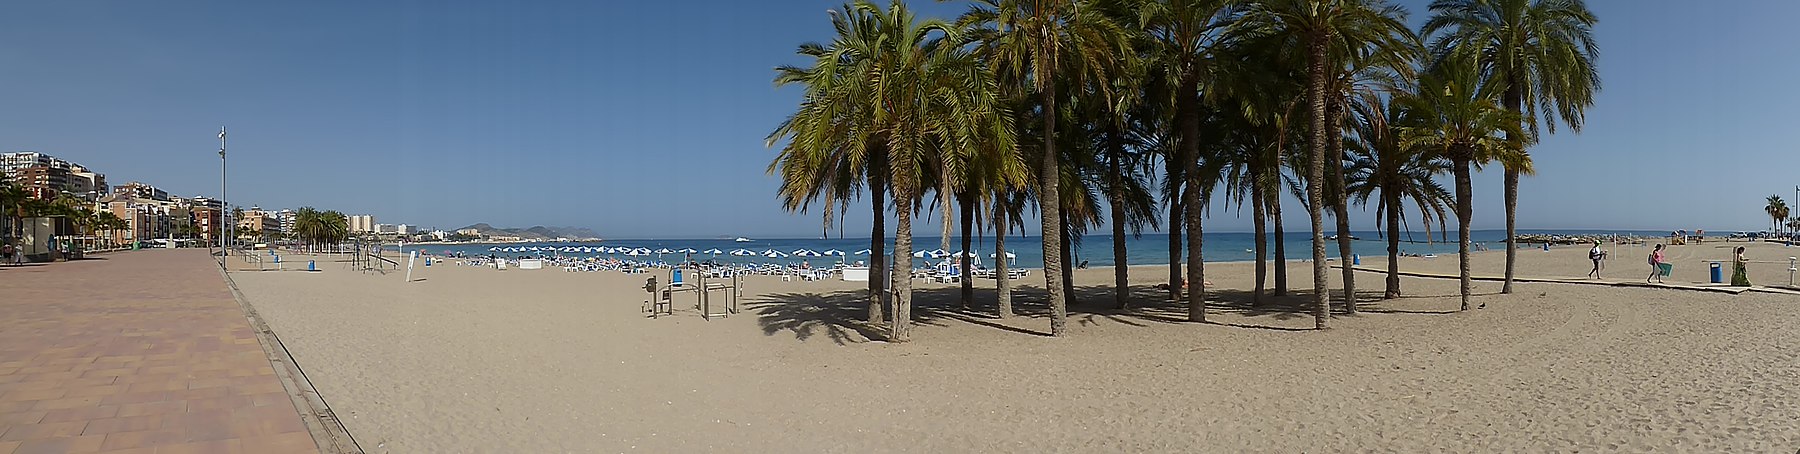 La plage de villajoiosa - panoramio (3).jpg